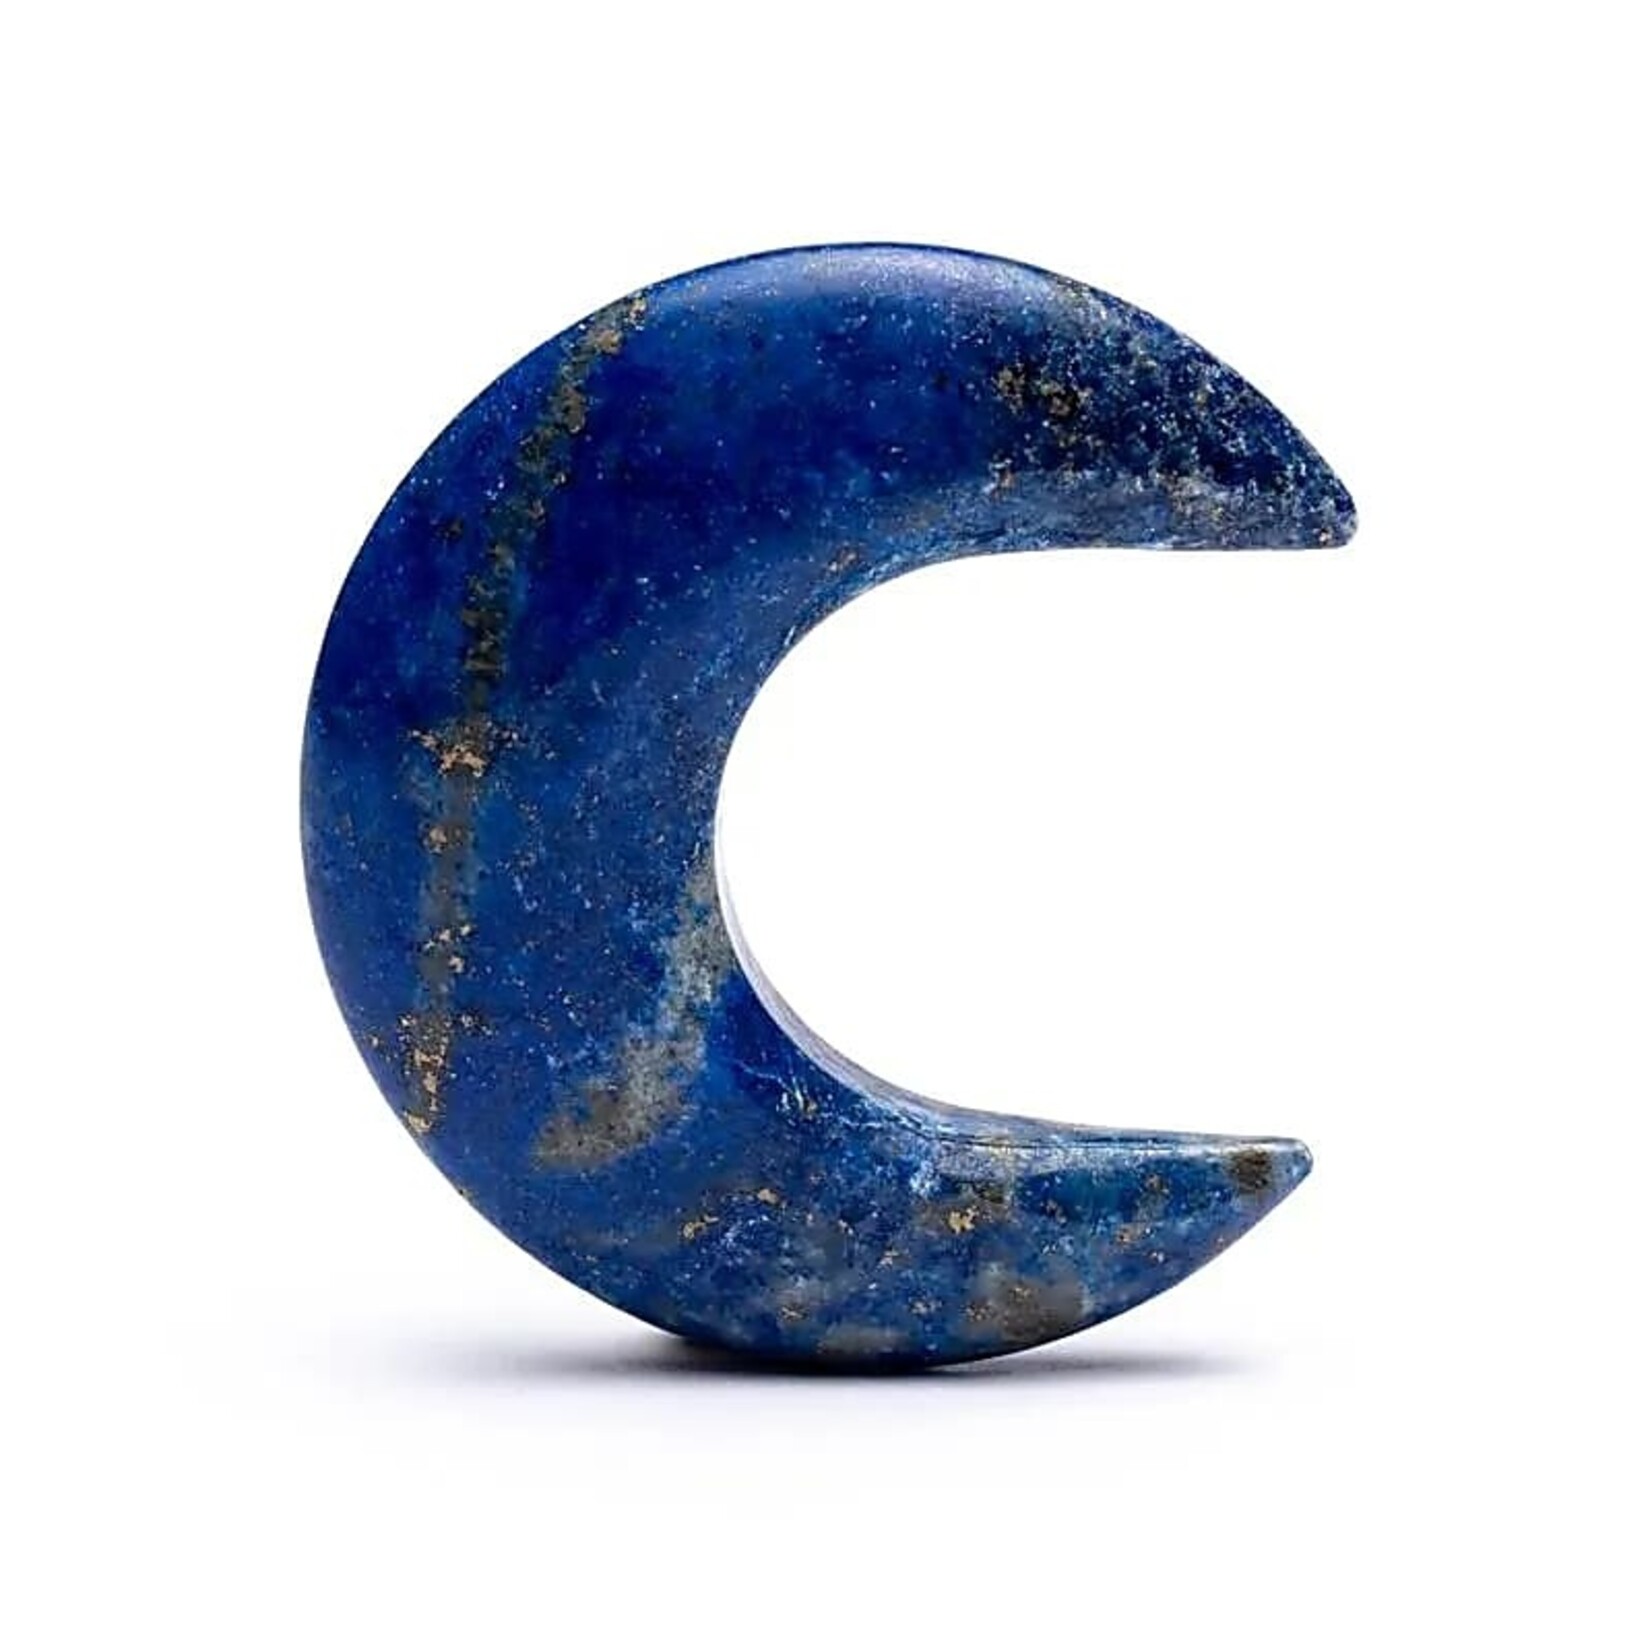 Maanvormige edelsteen lapis lazuli -- 4 cm